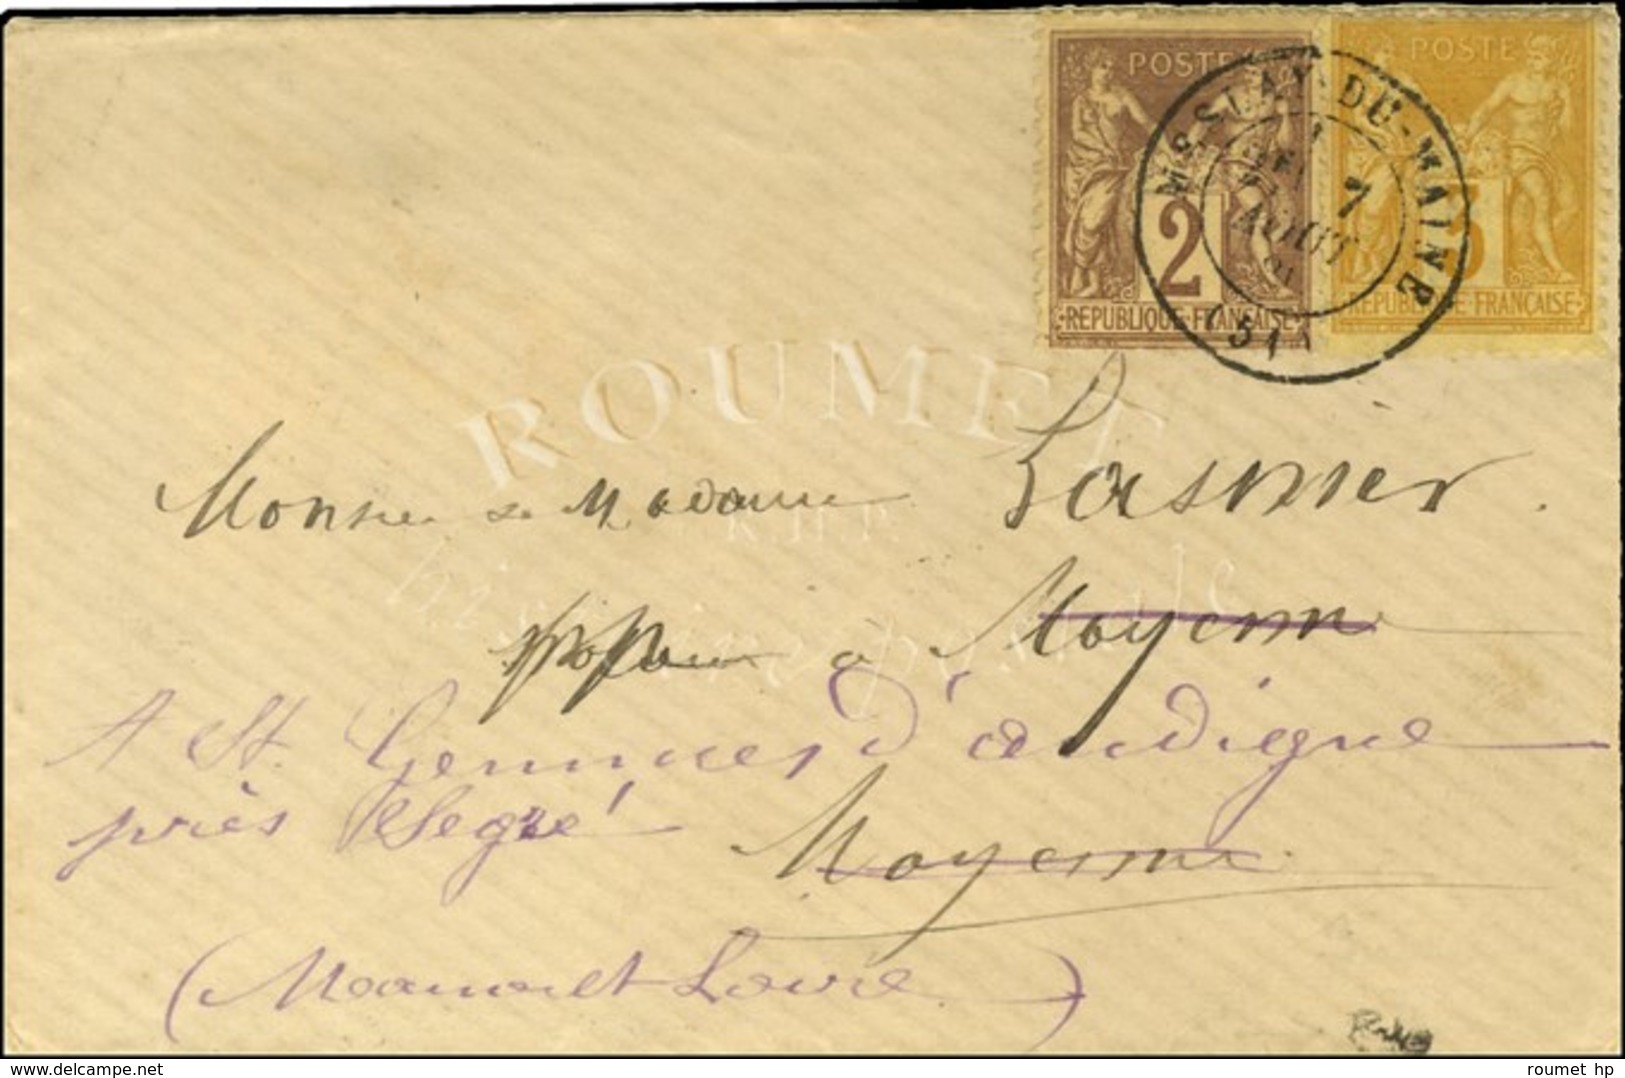 Càd MESLAY-DU-MAINE / N° 85 + 86 Sur Enveloppe Carte De Visite. 1881. - SUP. - R. - 1876-1878 Sage (Type I)